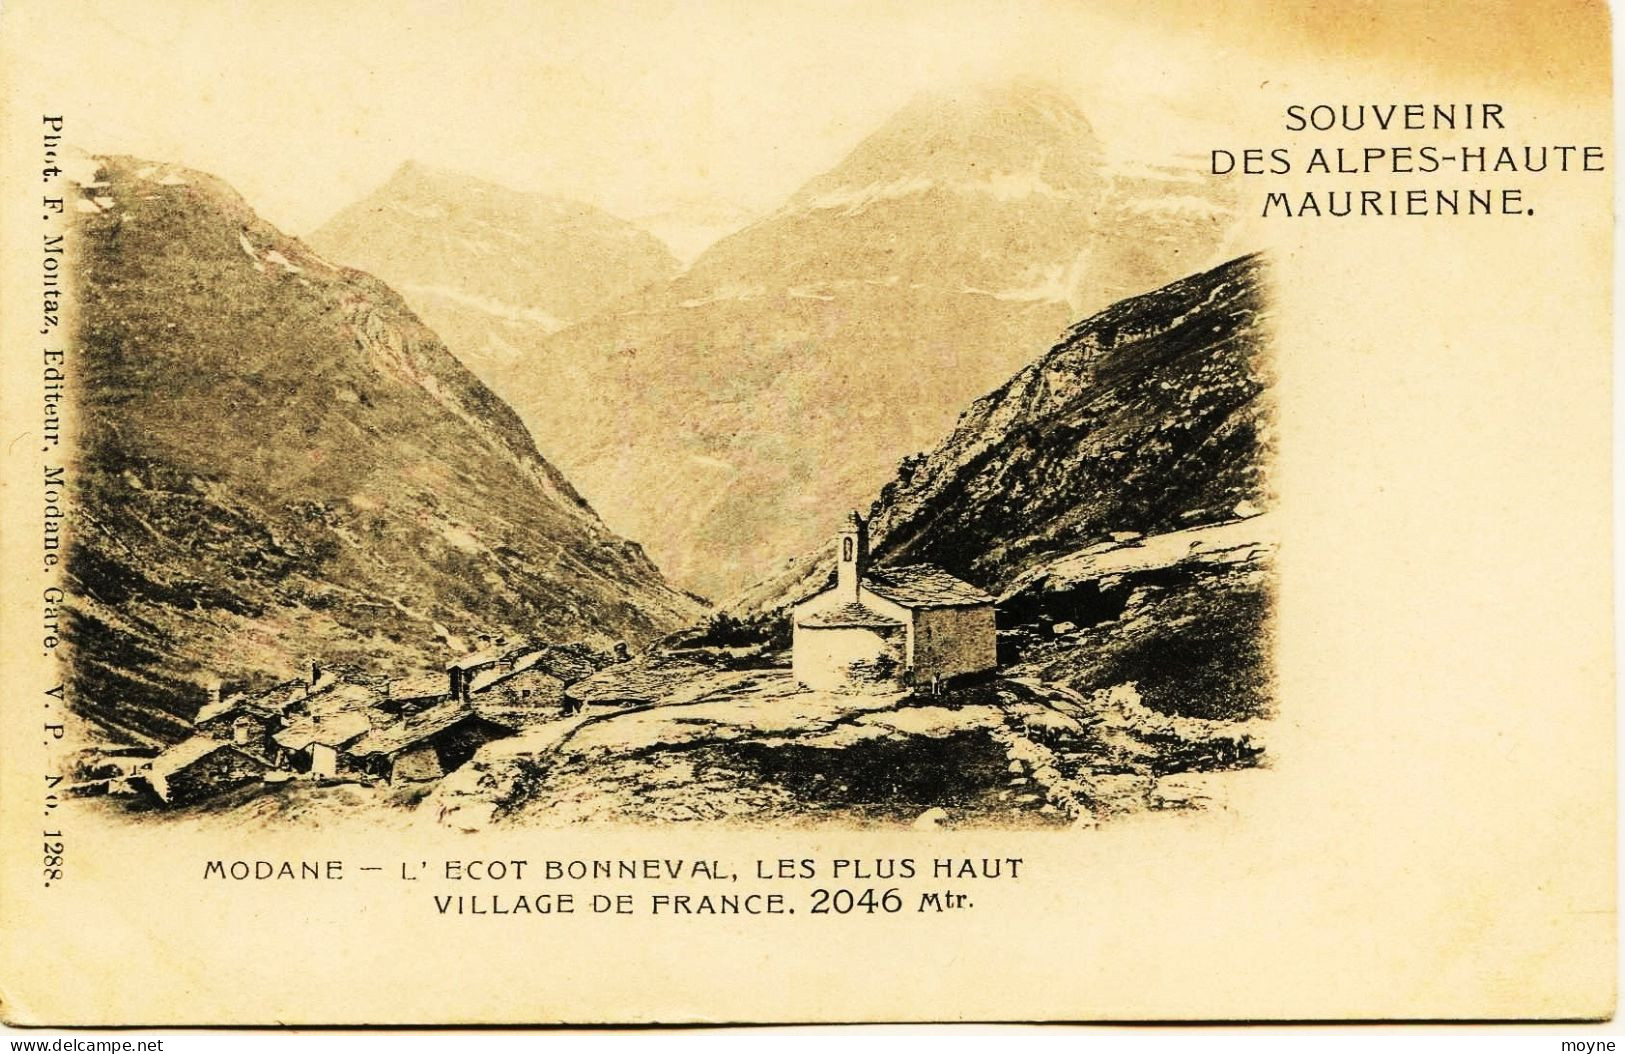 3576 -Savoie - MODANE - L'ECOT BONNEVAL  Hte MAURIENNE - LES PLUS HAUTS VILLAGES DE FRANCE - édit Montaz - T.RARE - Modane